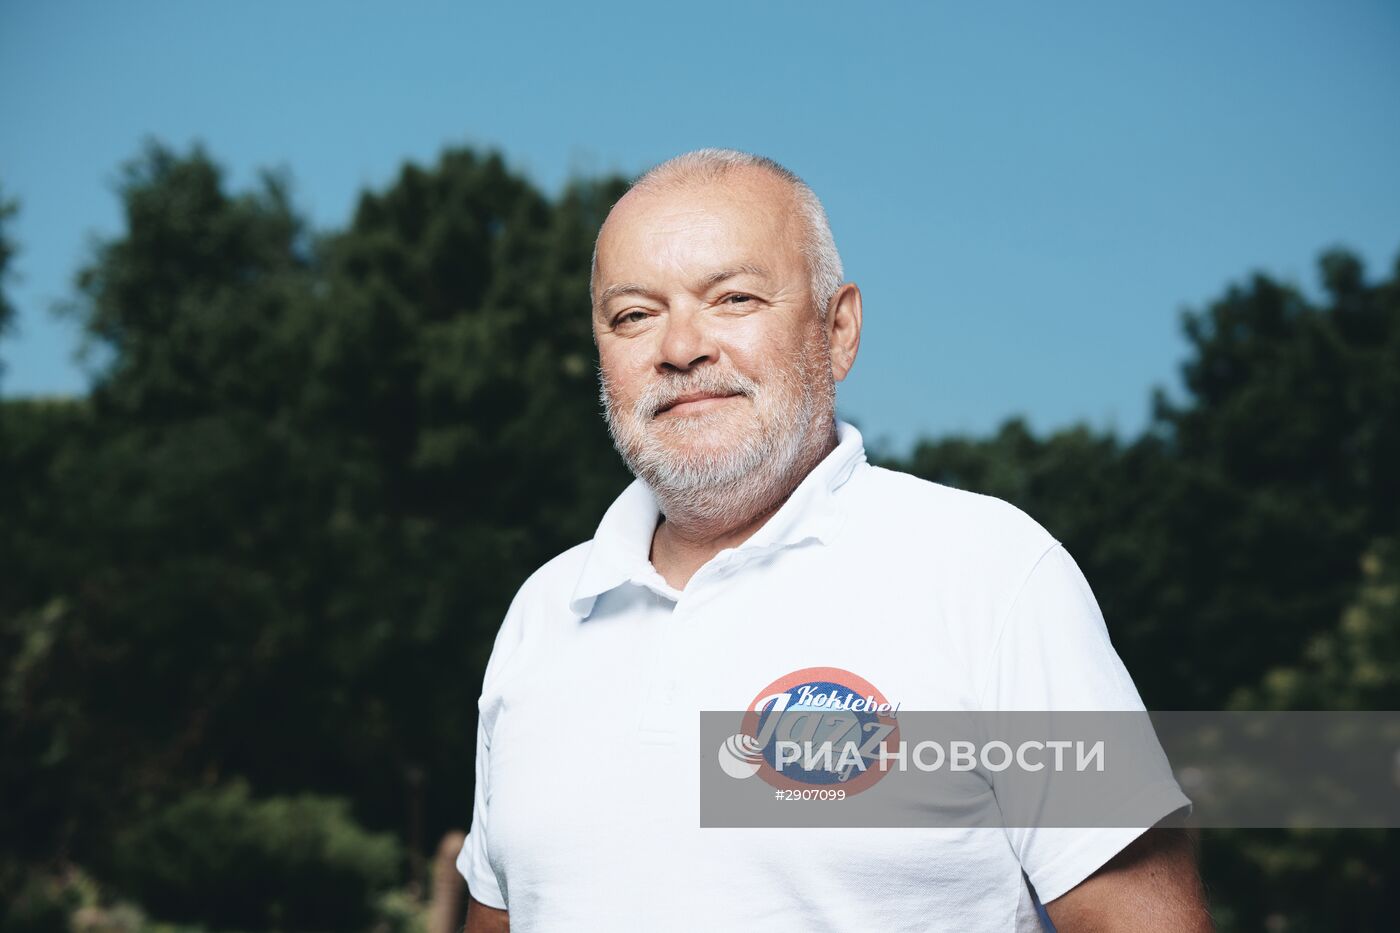 Дмитрий Киселев выступил на молодежном форуме "Таврида"